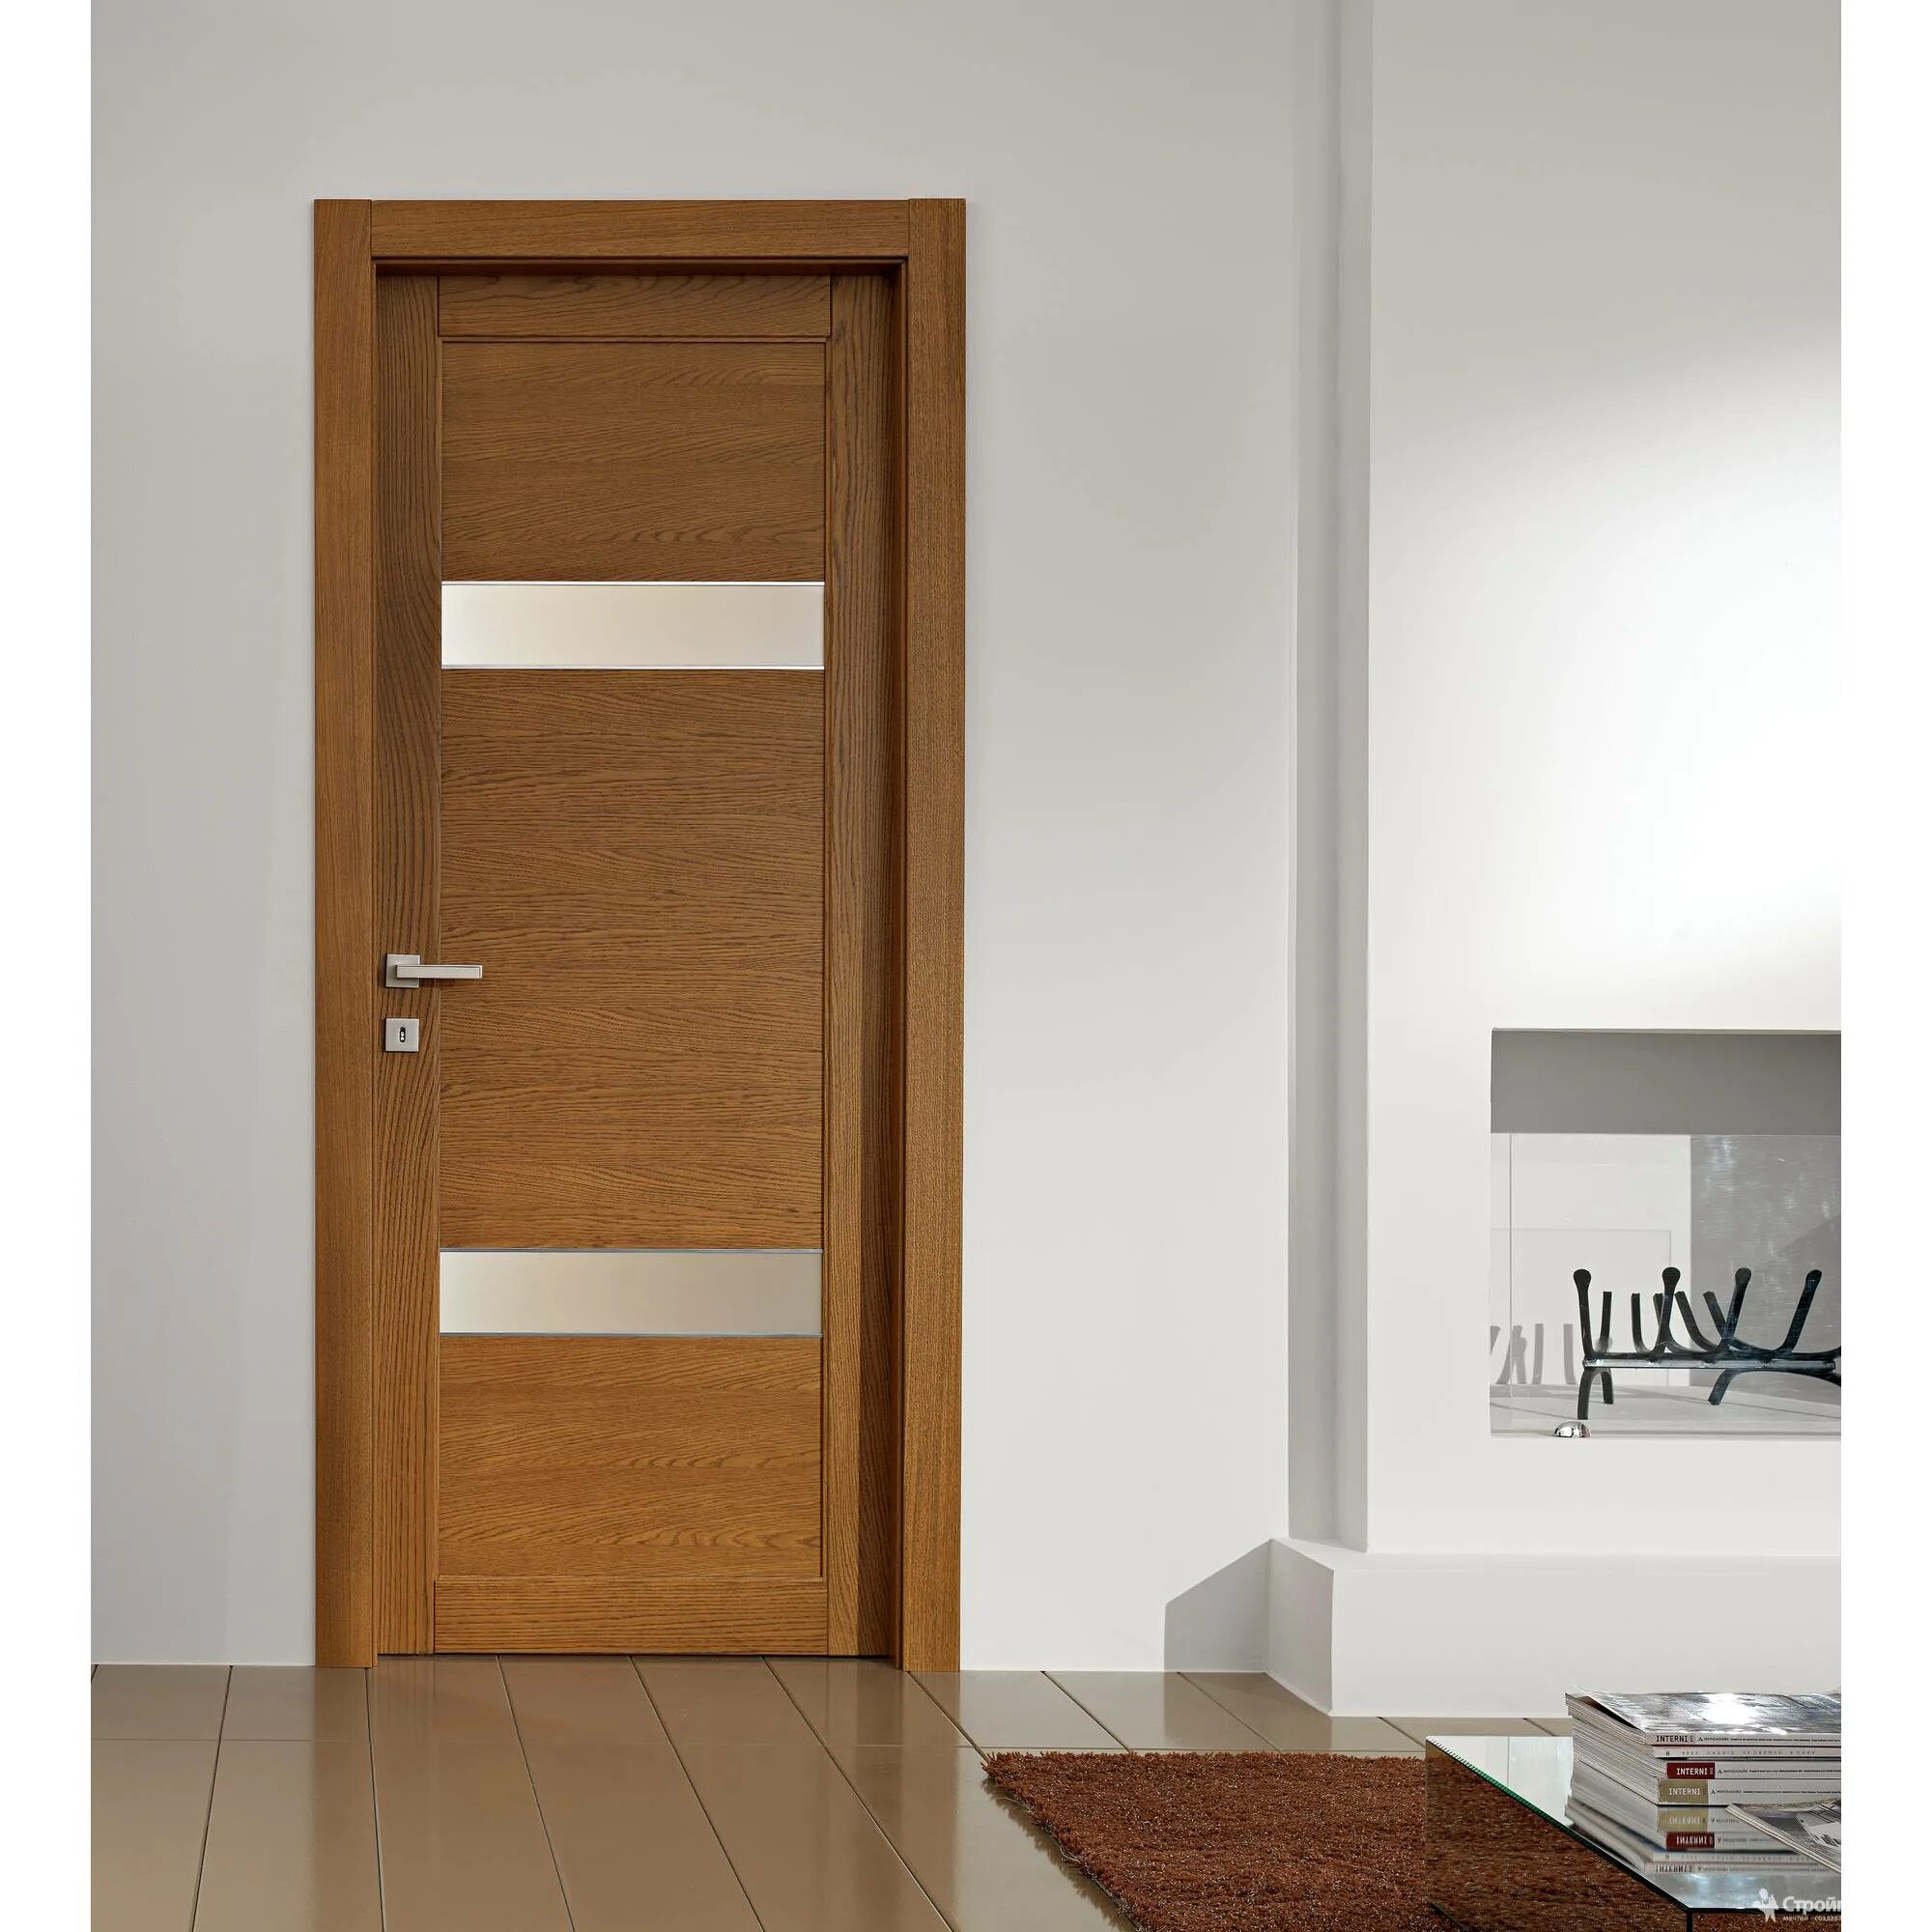 Двери интериор Дорс. Двери Modern Doors Design. Современные деревянные двери межкомнатные. Двери в современном интерьере. True двери